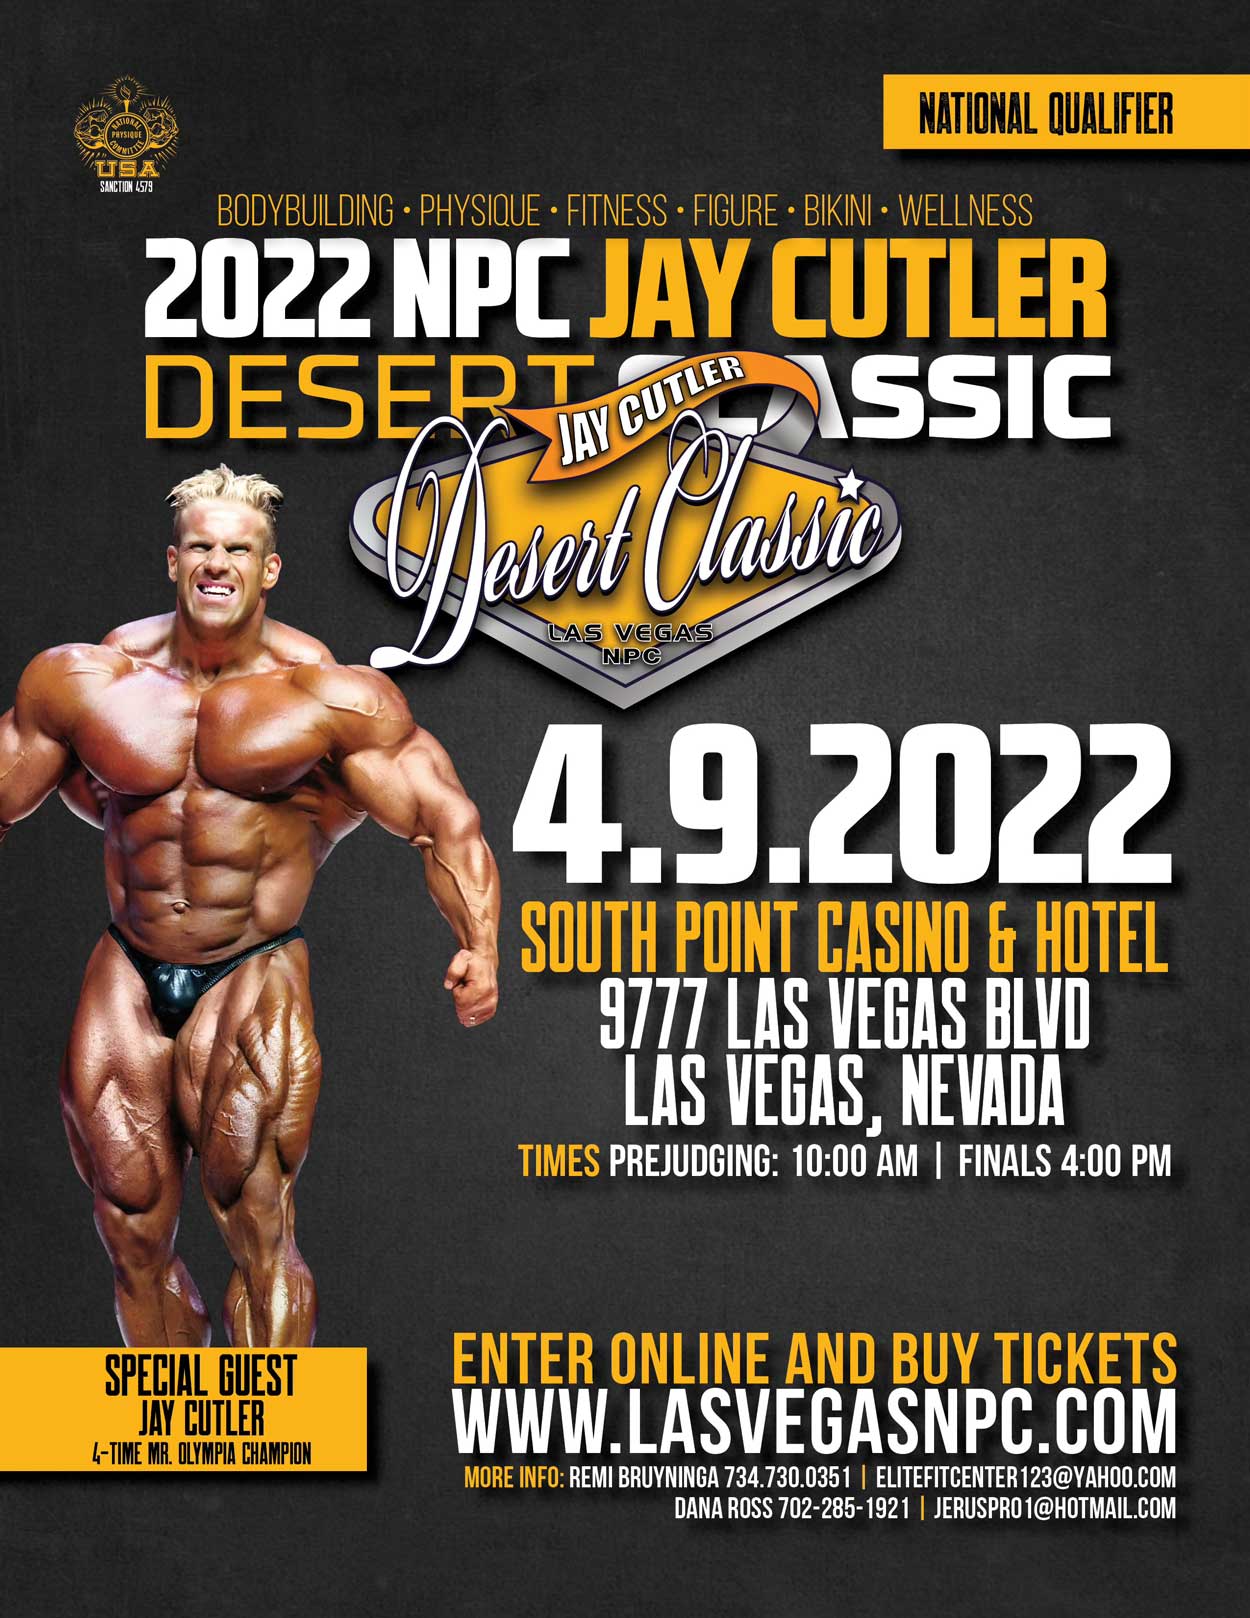 Jay Cutler - On April 16, 2022, the NPC JAY CUTLER CLASSIC